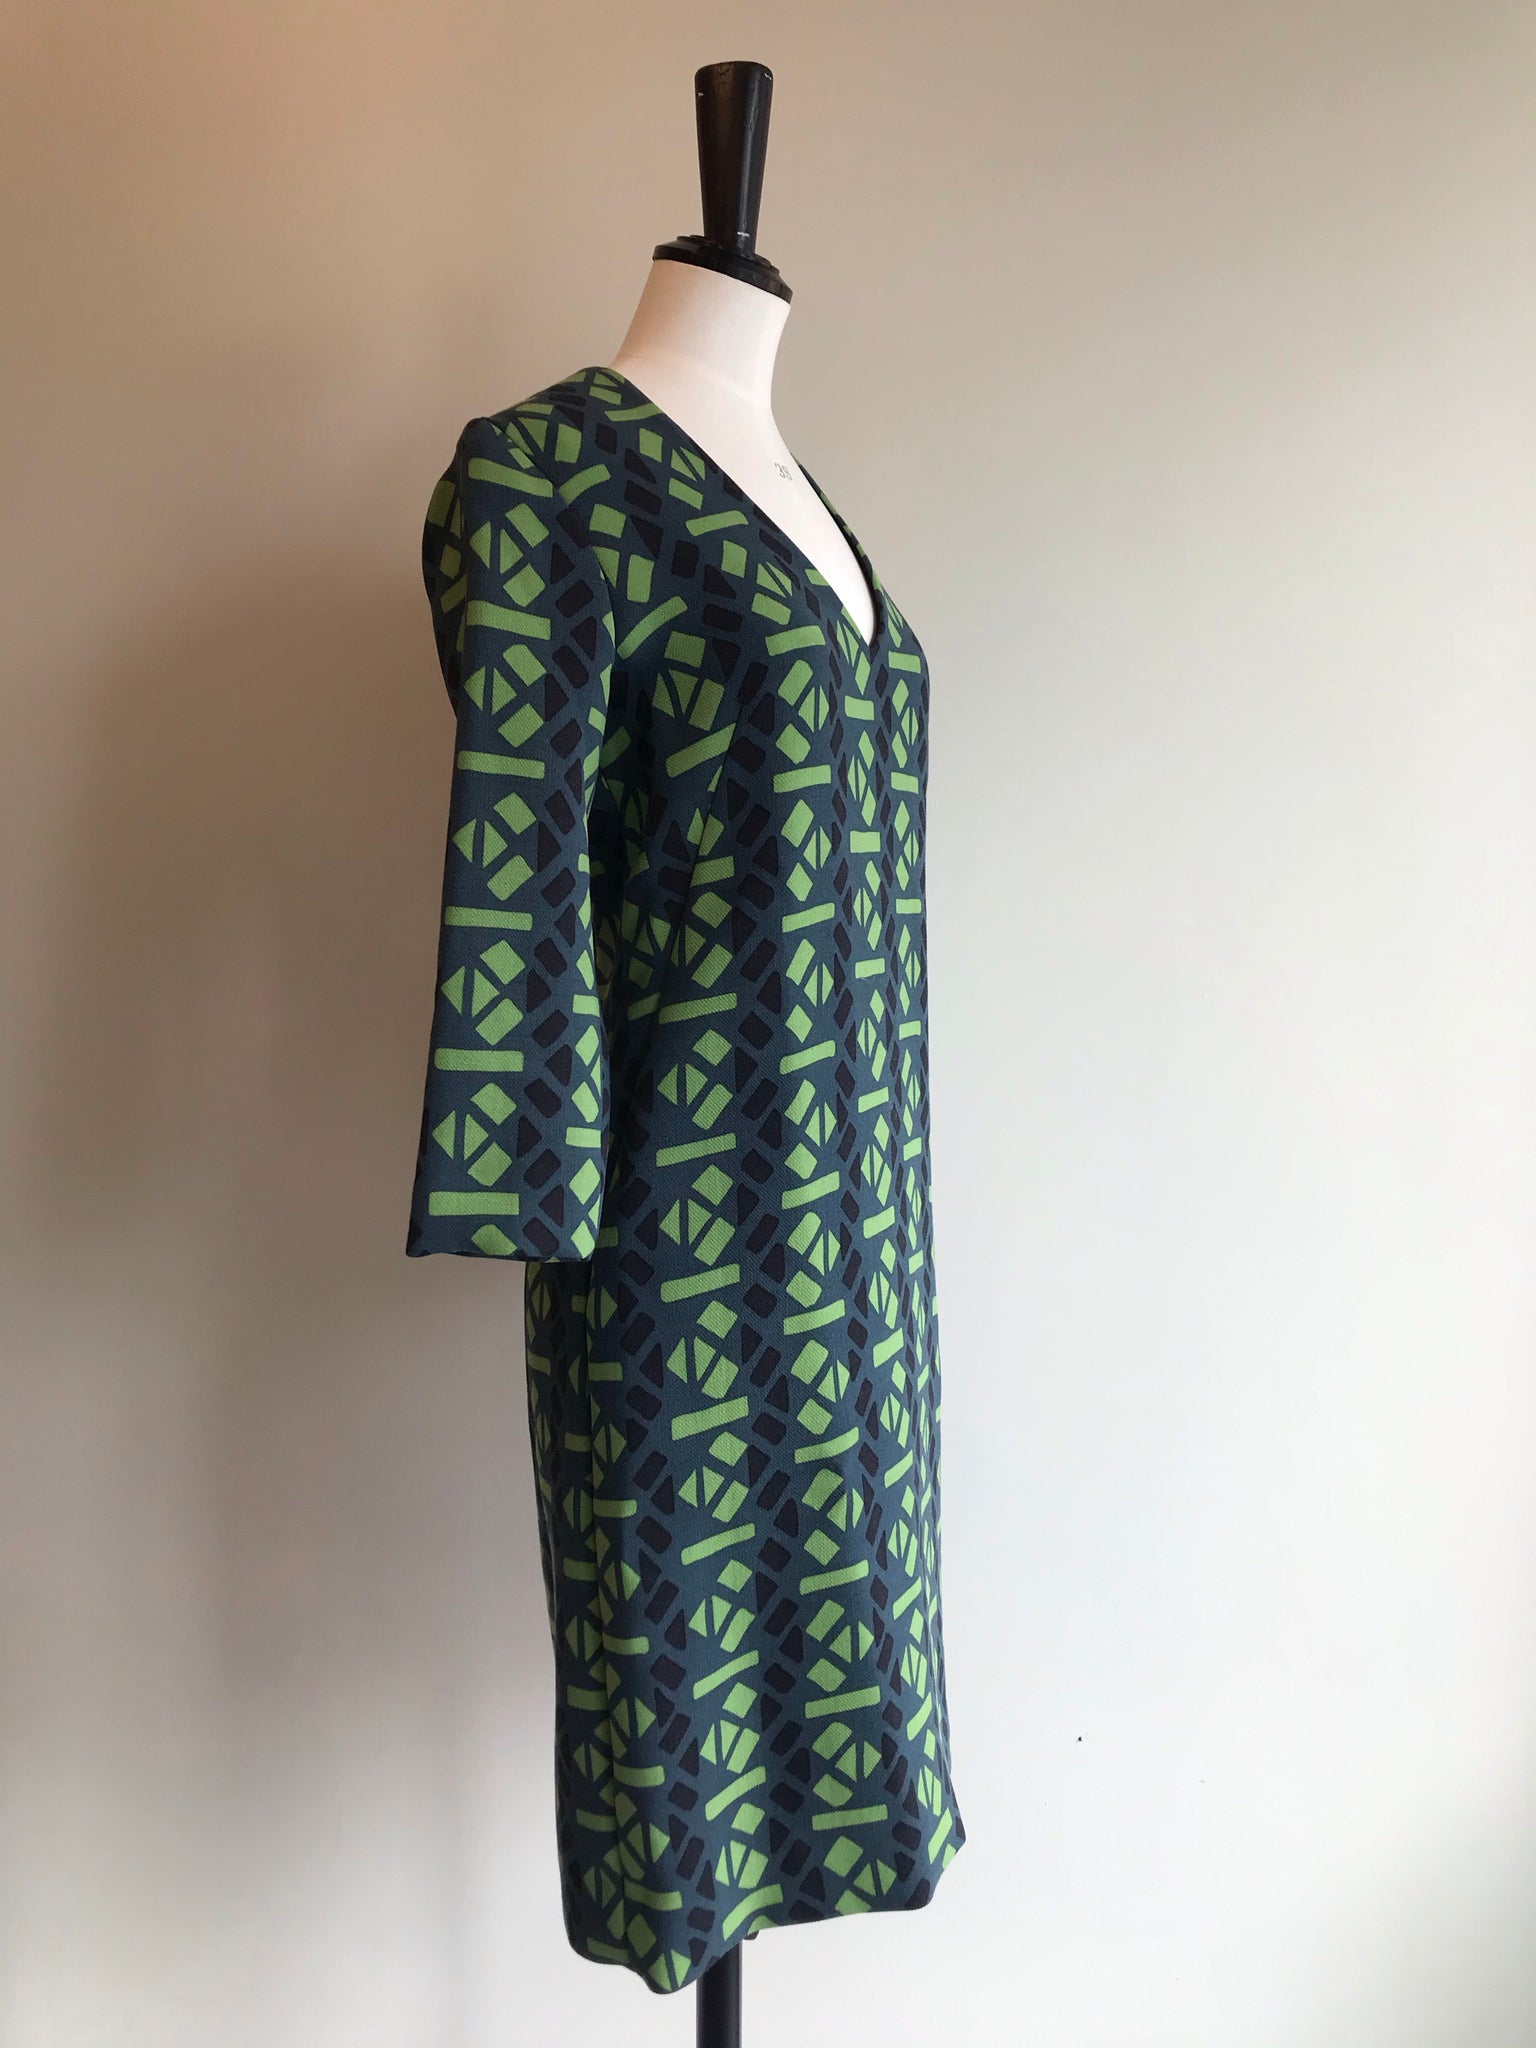 Isabella's Wardrobe Marni Abstract Print Dress.